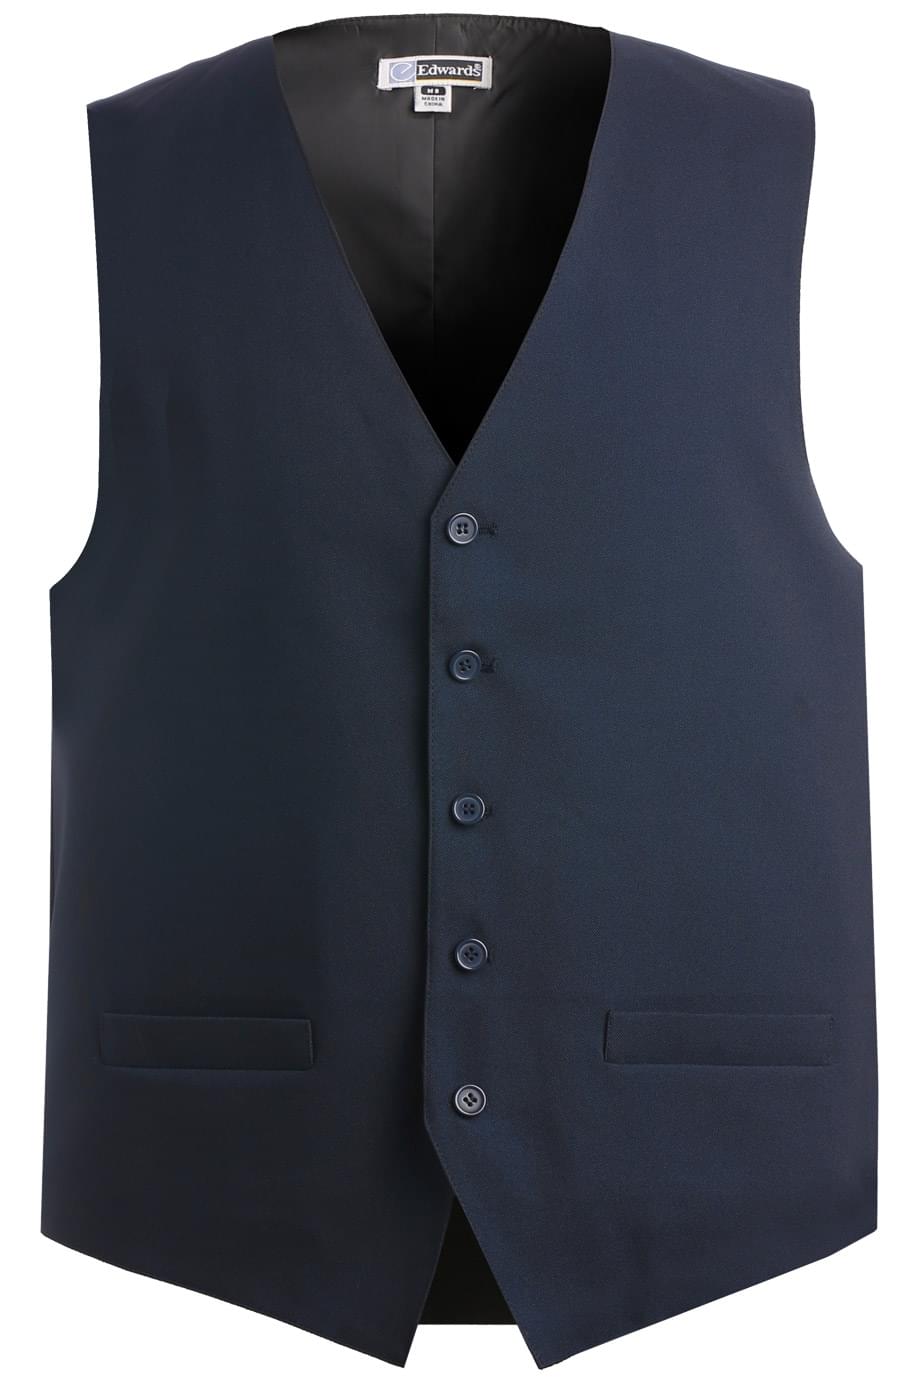 Edwards Garment 4490 - Men's Economy Vest